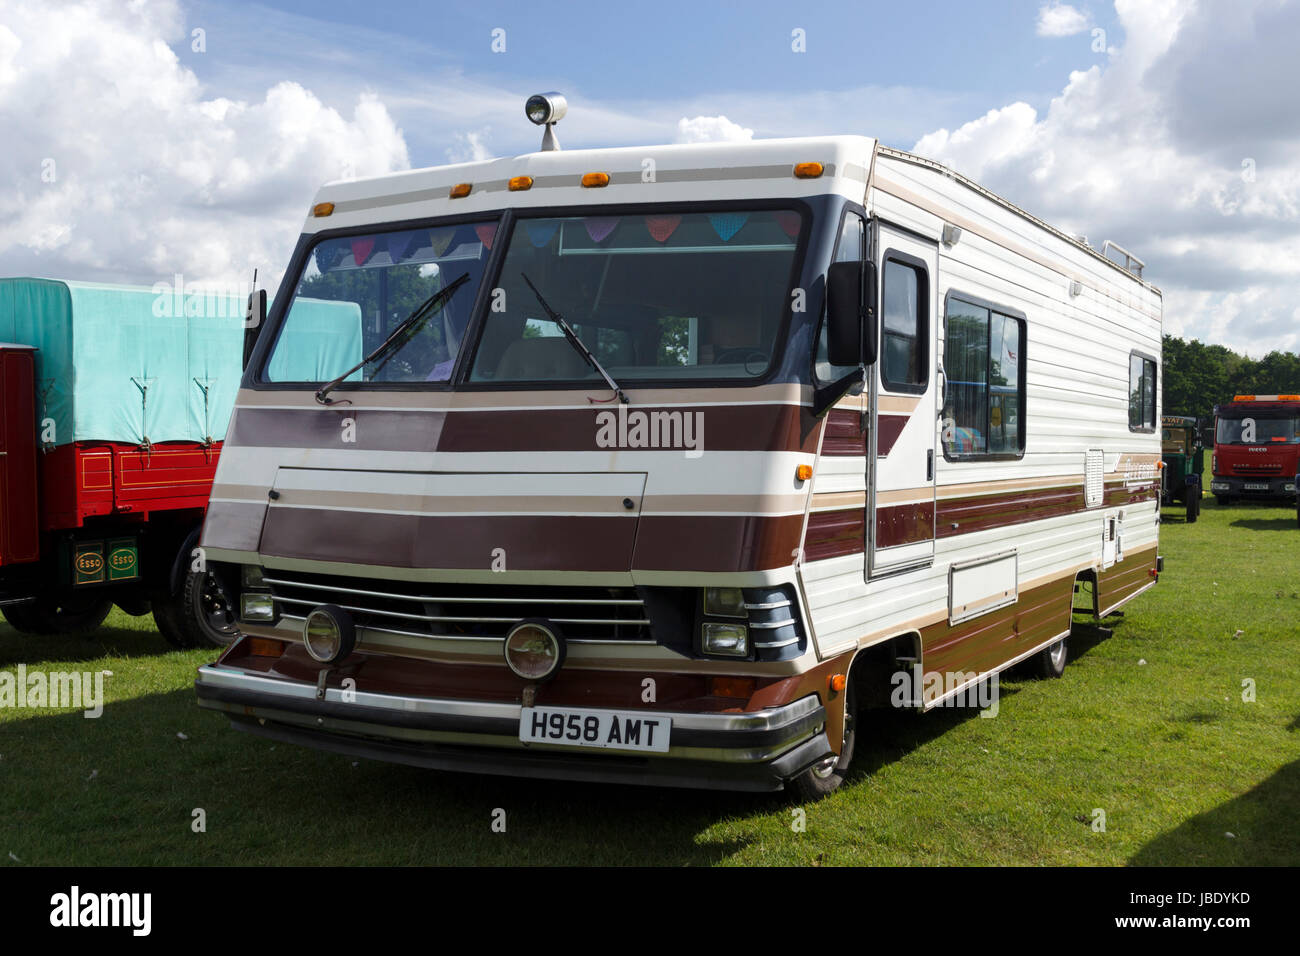 Allegro camper van Stock Photo - Alamy